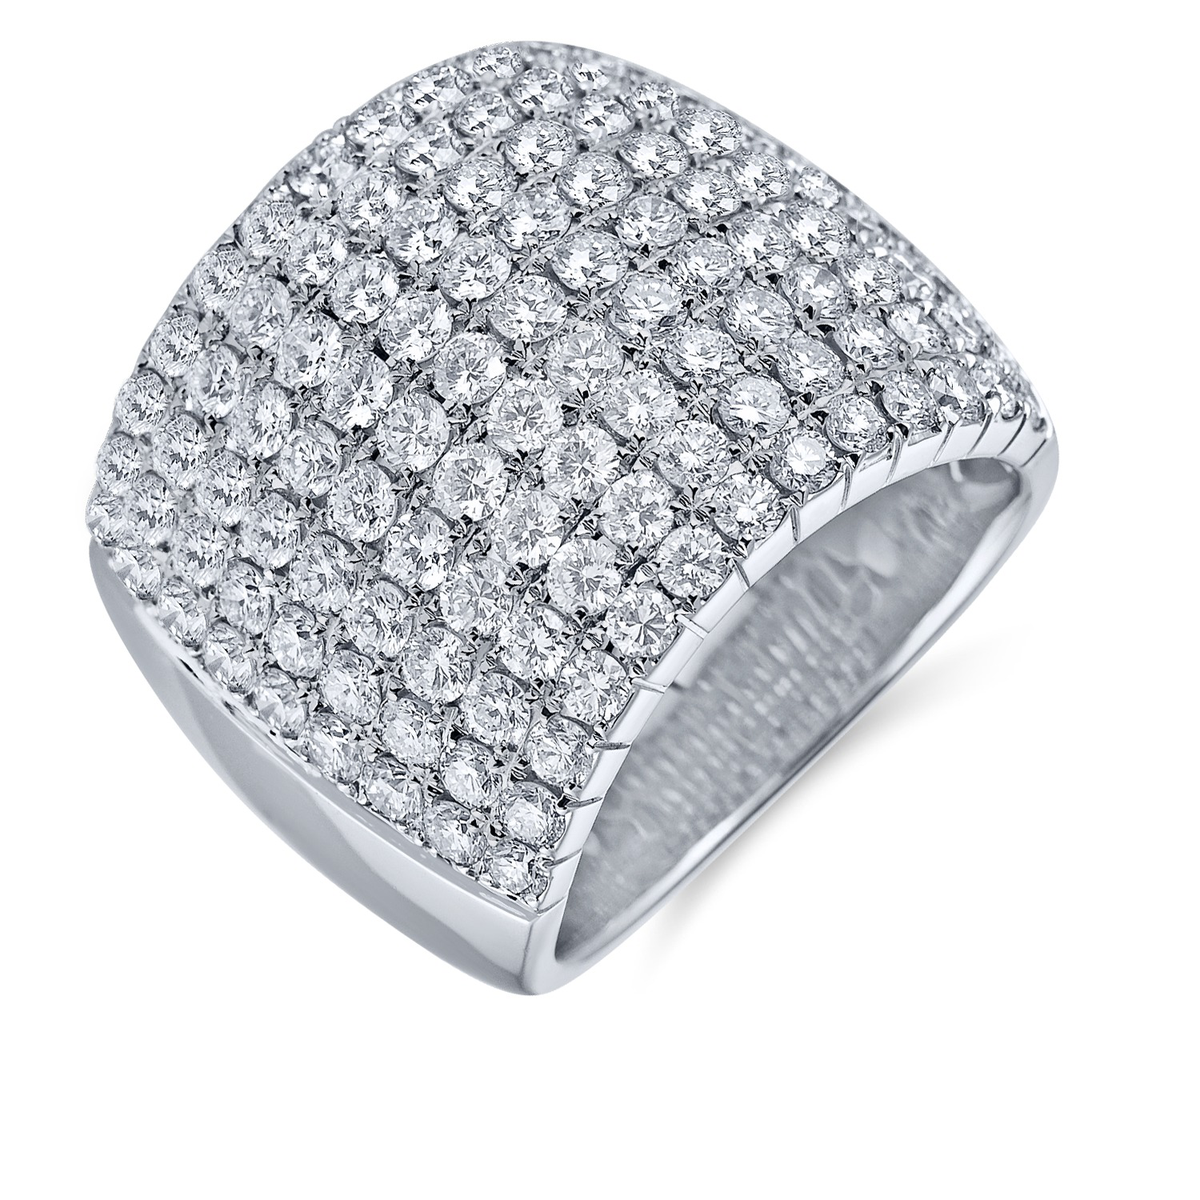 Prsten ALO diamonds, 117 diamantů 3,64ct, cena 258 754,- Kč